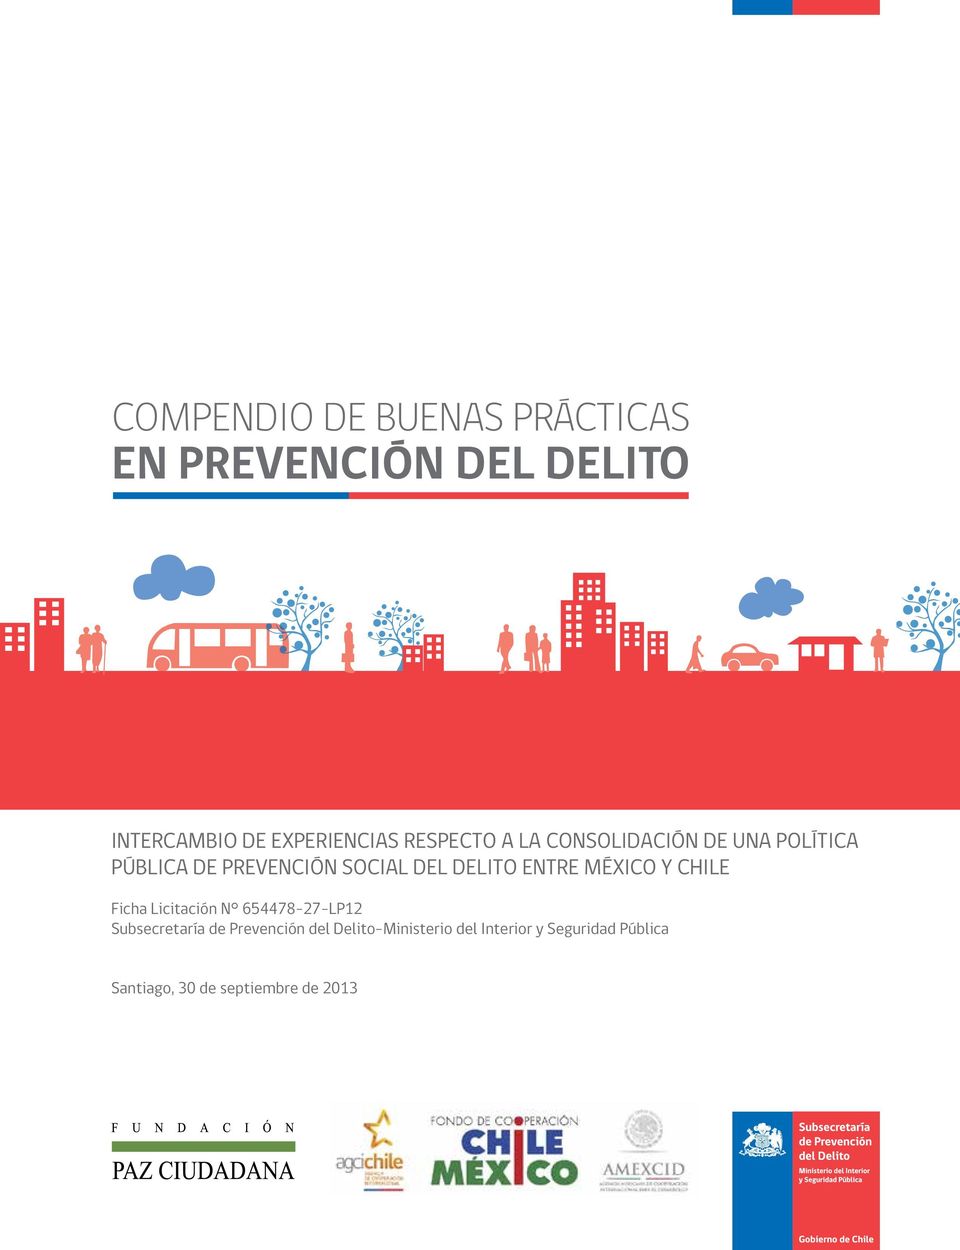 entre México y Chile Ficha Licitación N 654478-27-LP12 Subsecretaría de Prevención